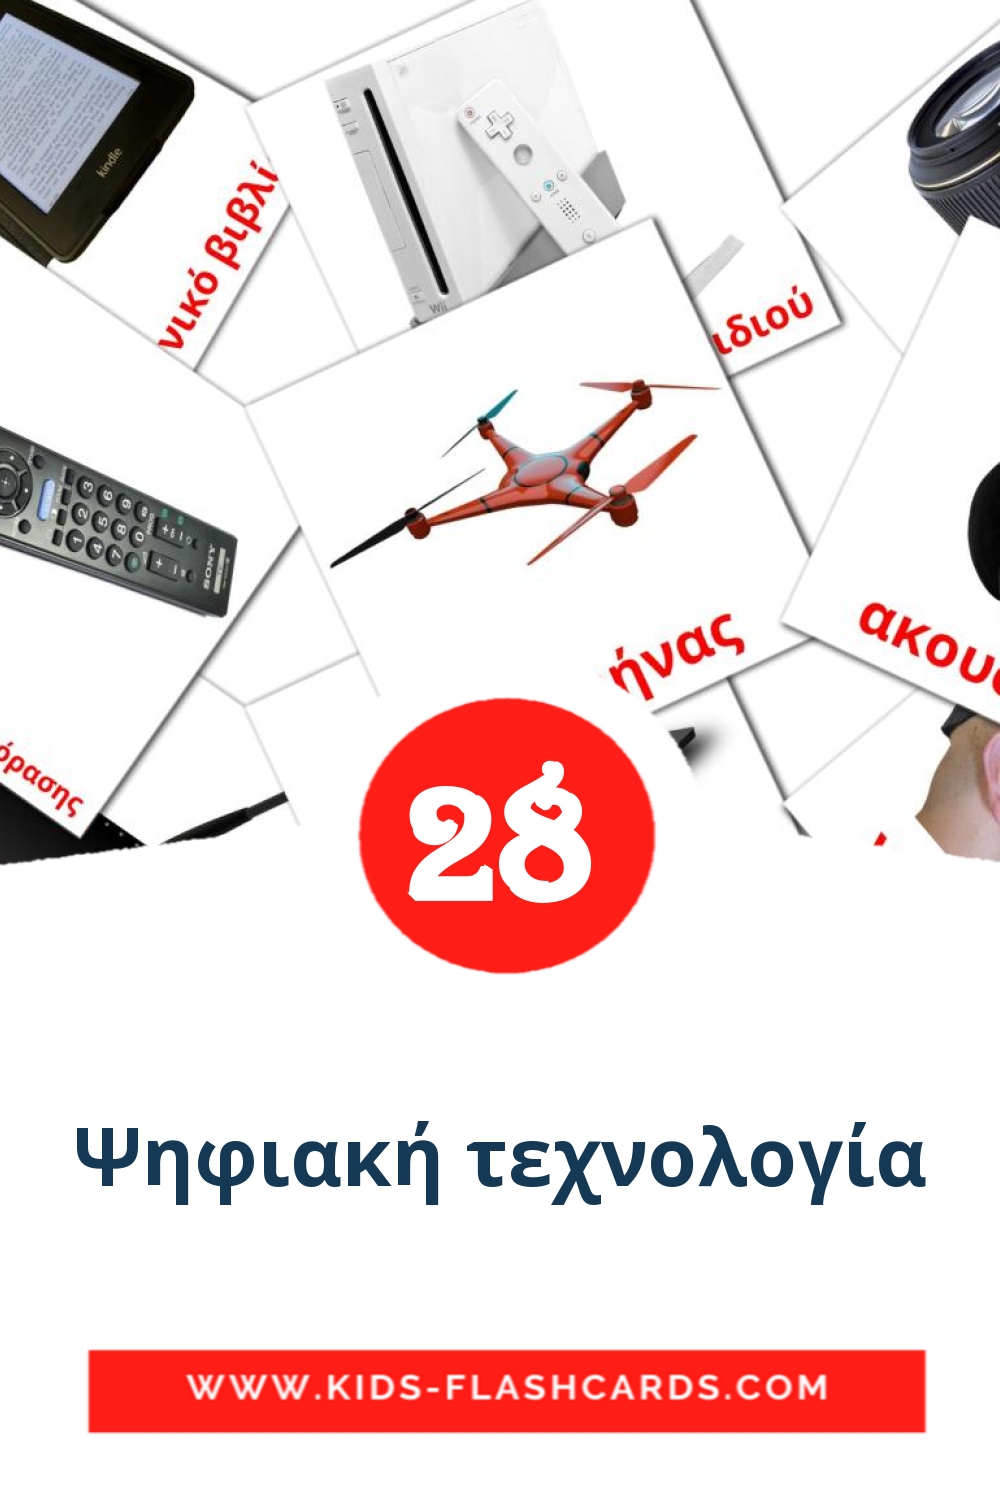 28 Ψηφιακή τεχνολογία Picture Cards for Kindergarden in greek